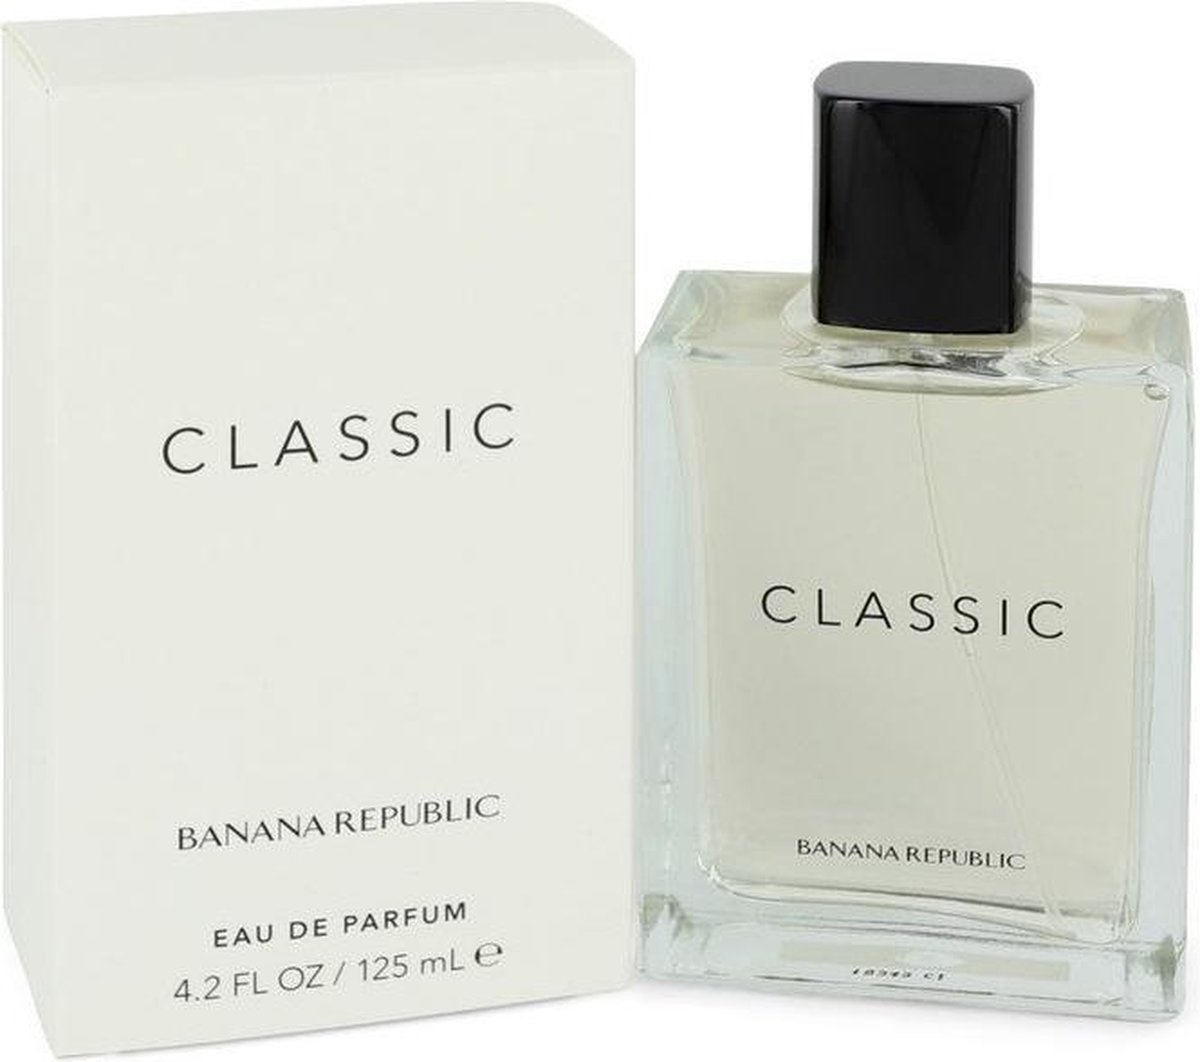 Banana Republic - Classic for Women - Eau De Parfum - 125ML